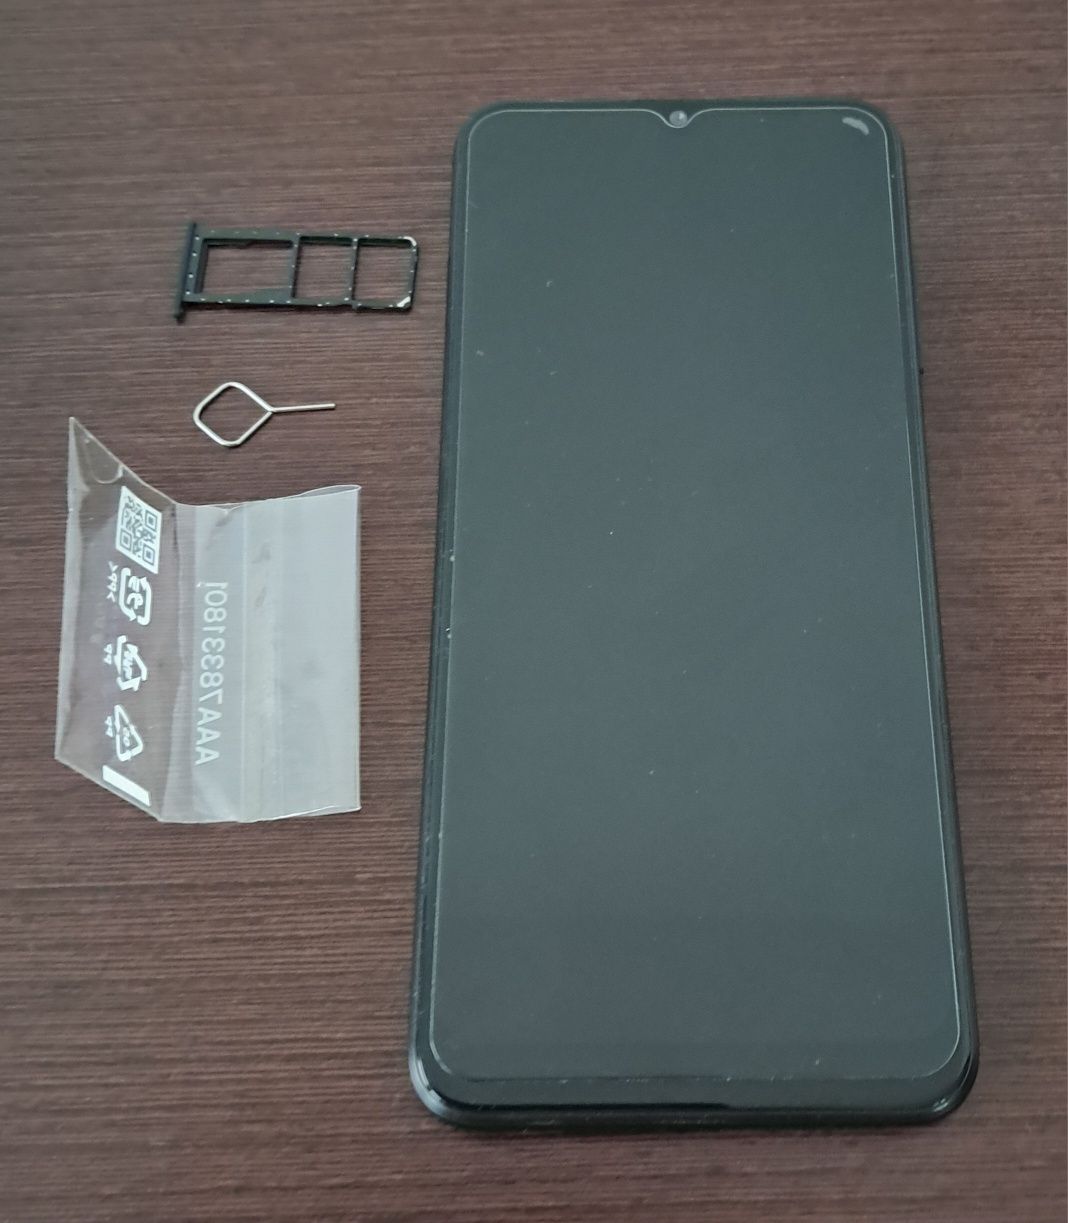 Samsung Galaxy A03S Black 32GB (SM-A037G/DSN) bez SIM-lock